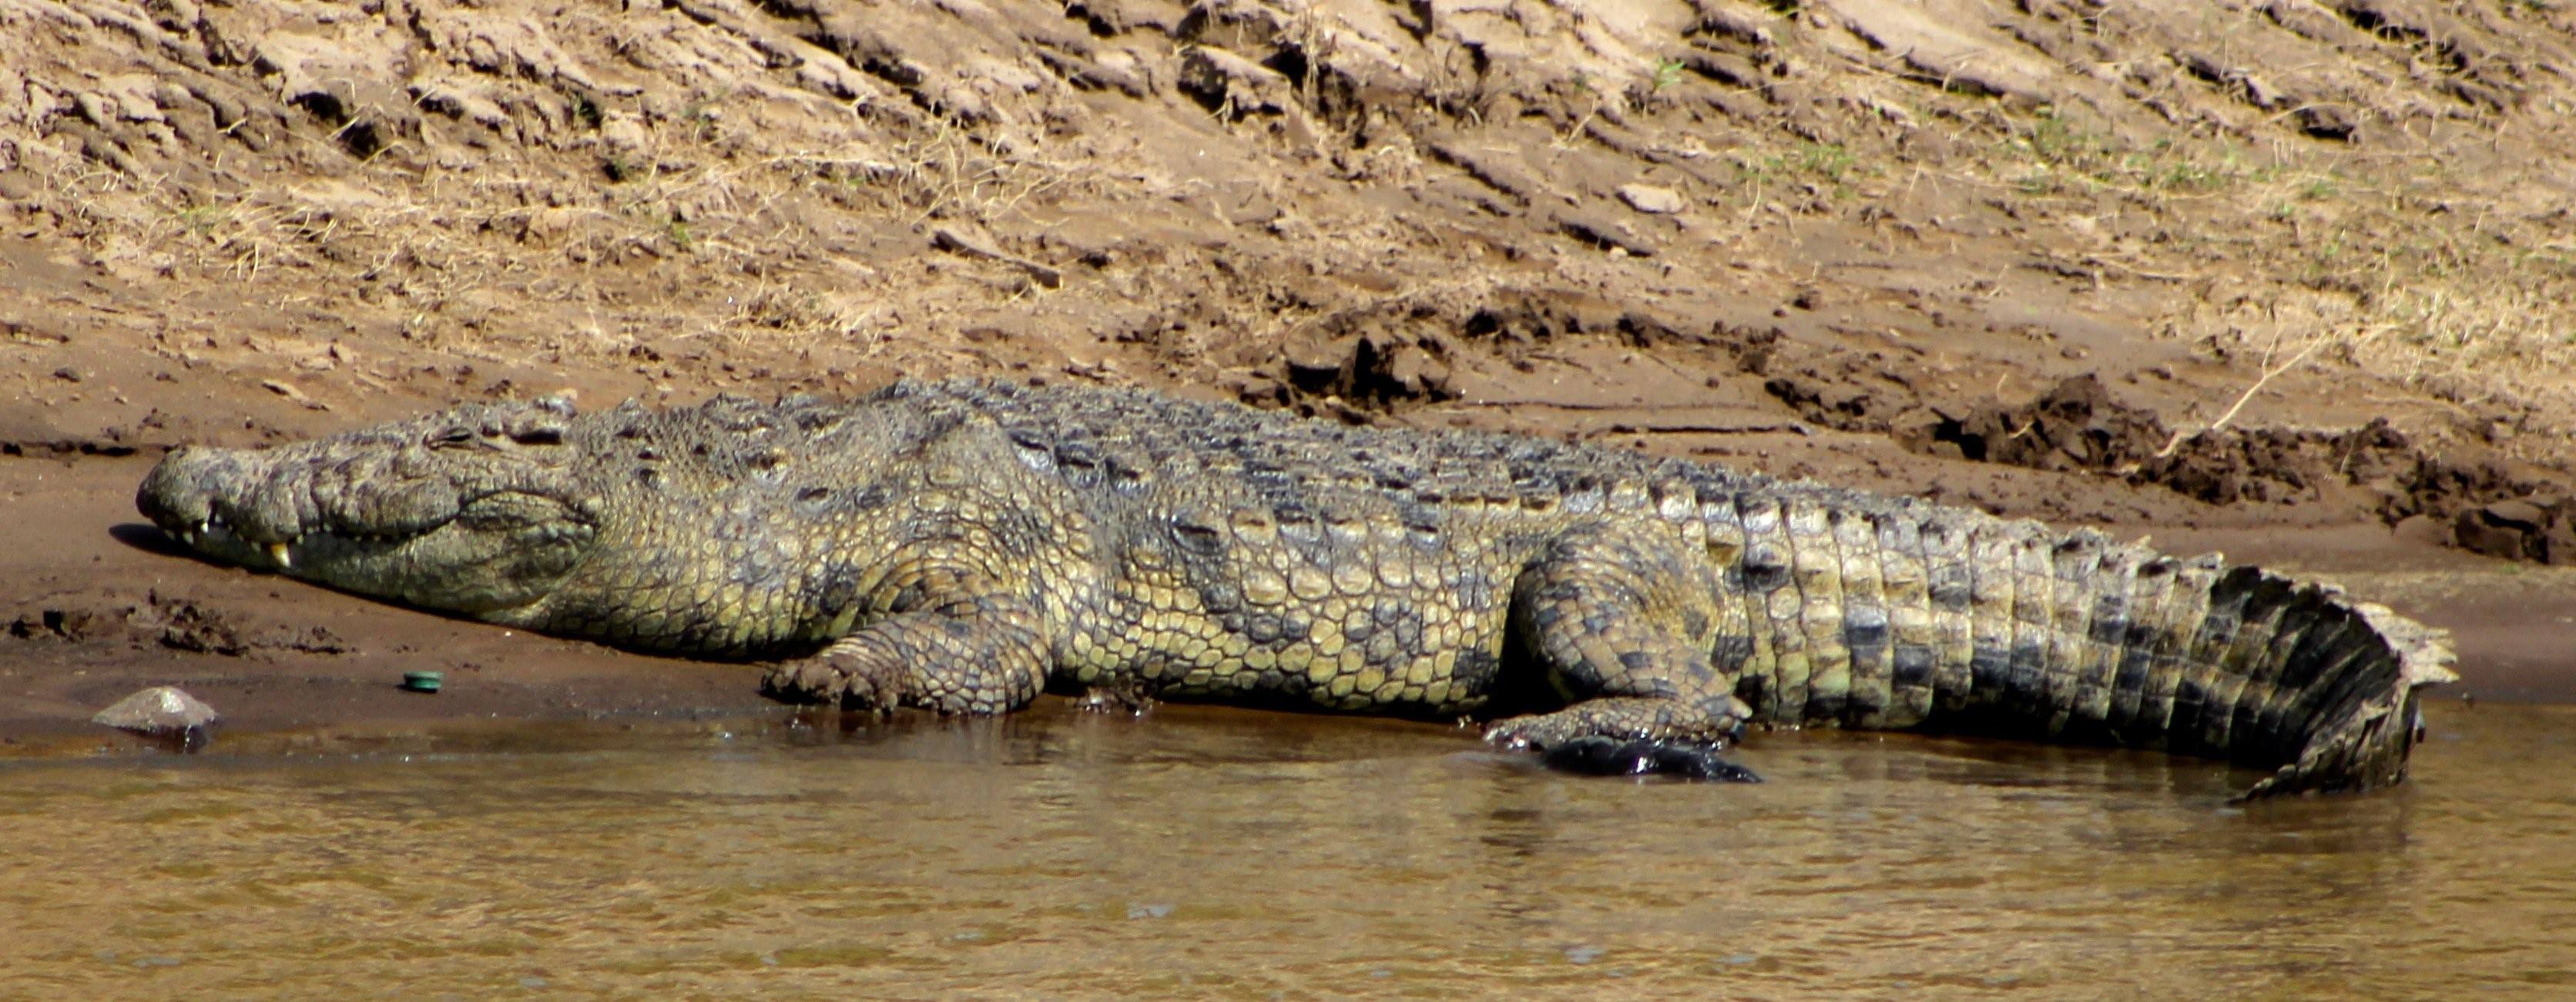 крокодилы в реке нил